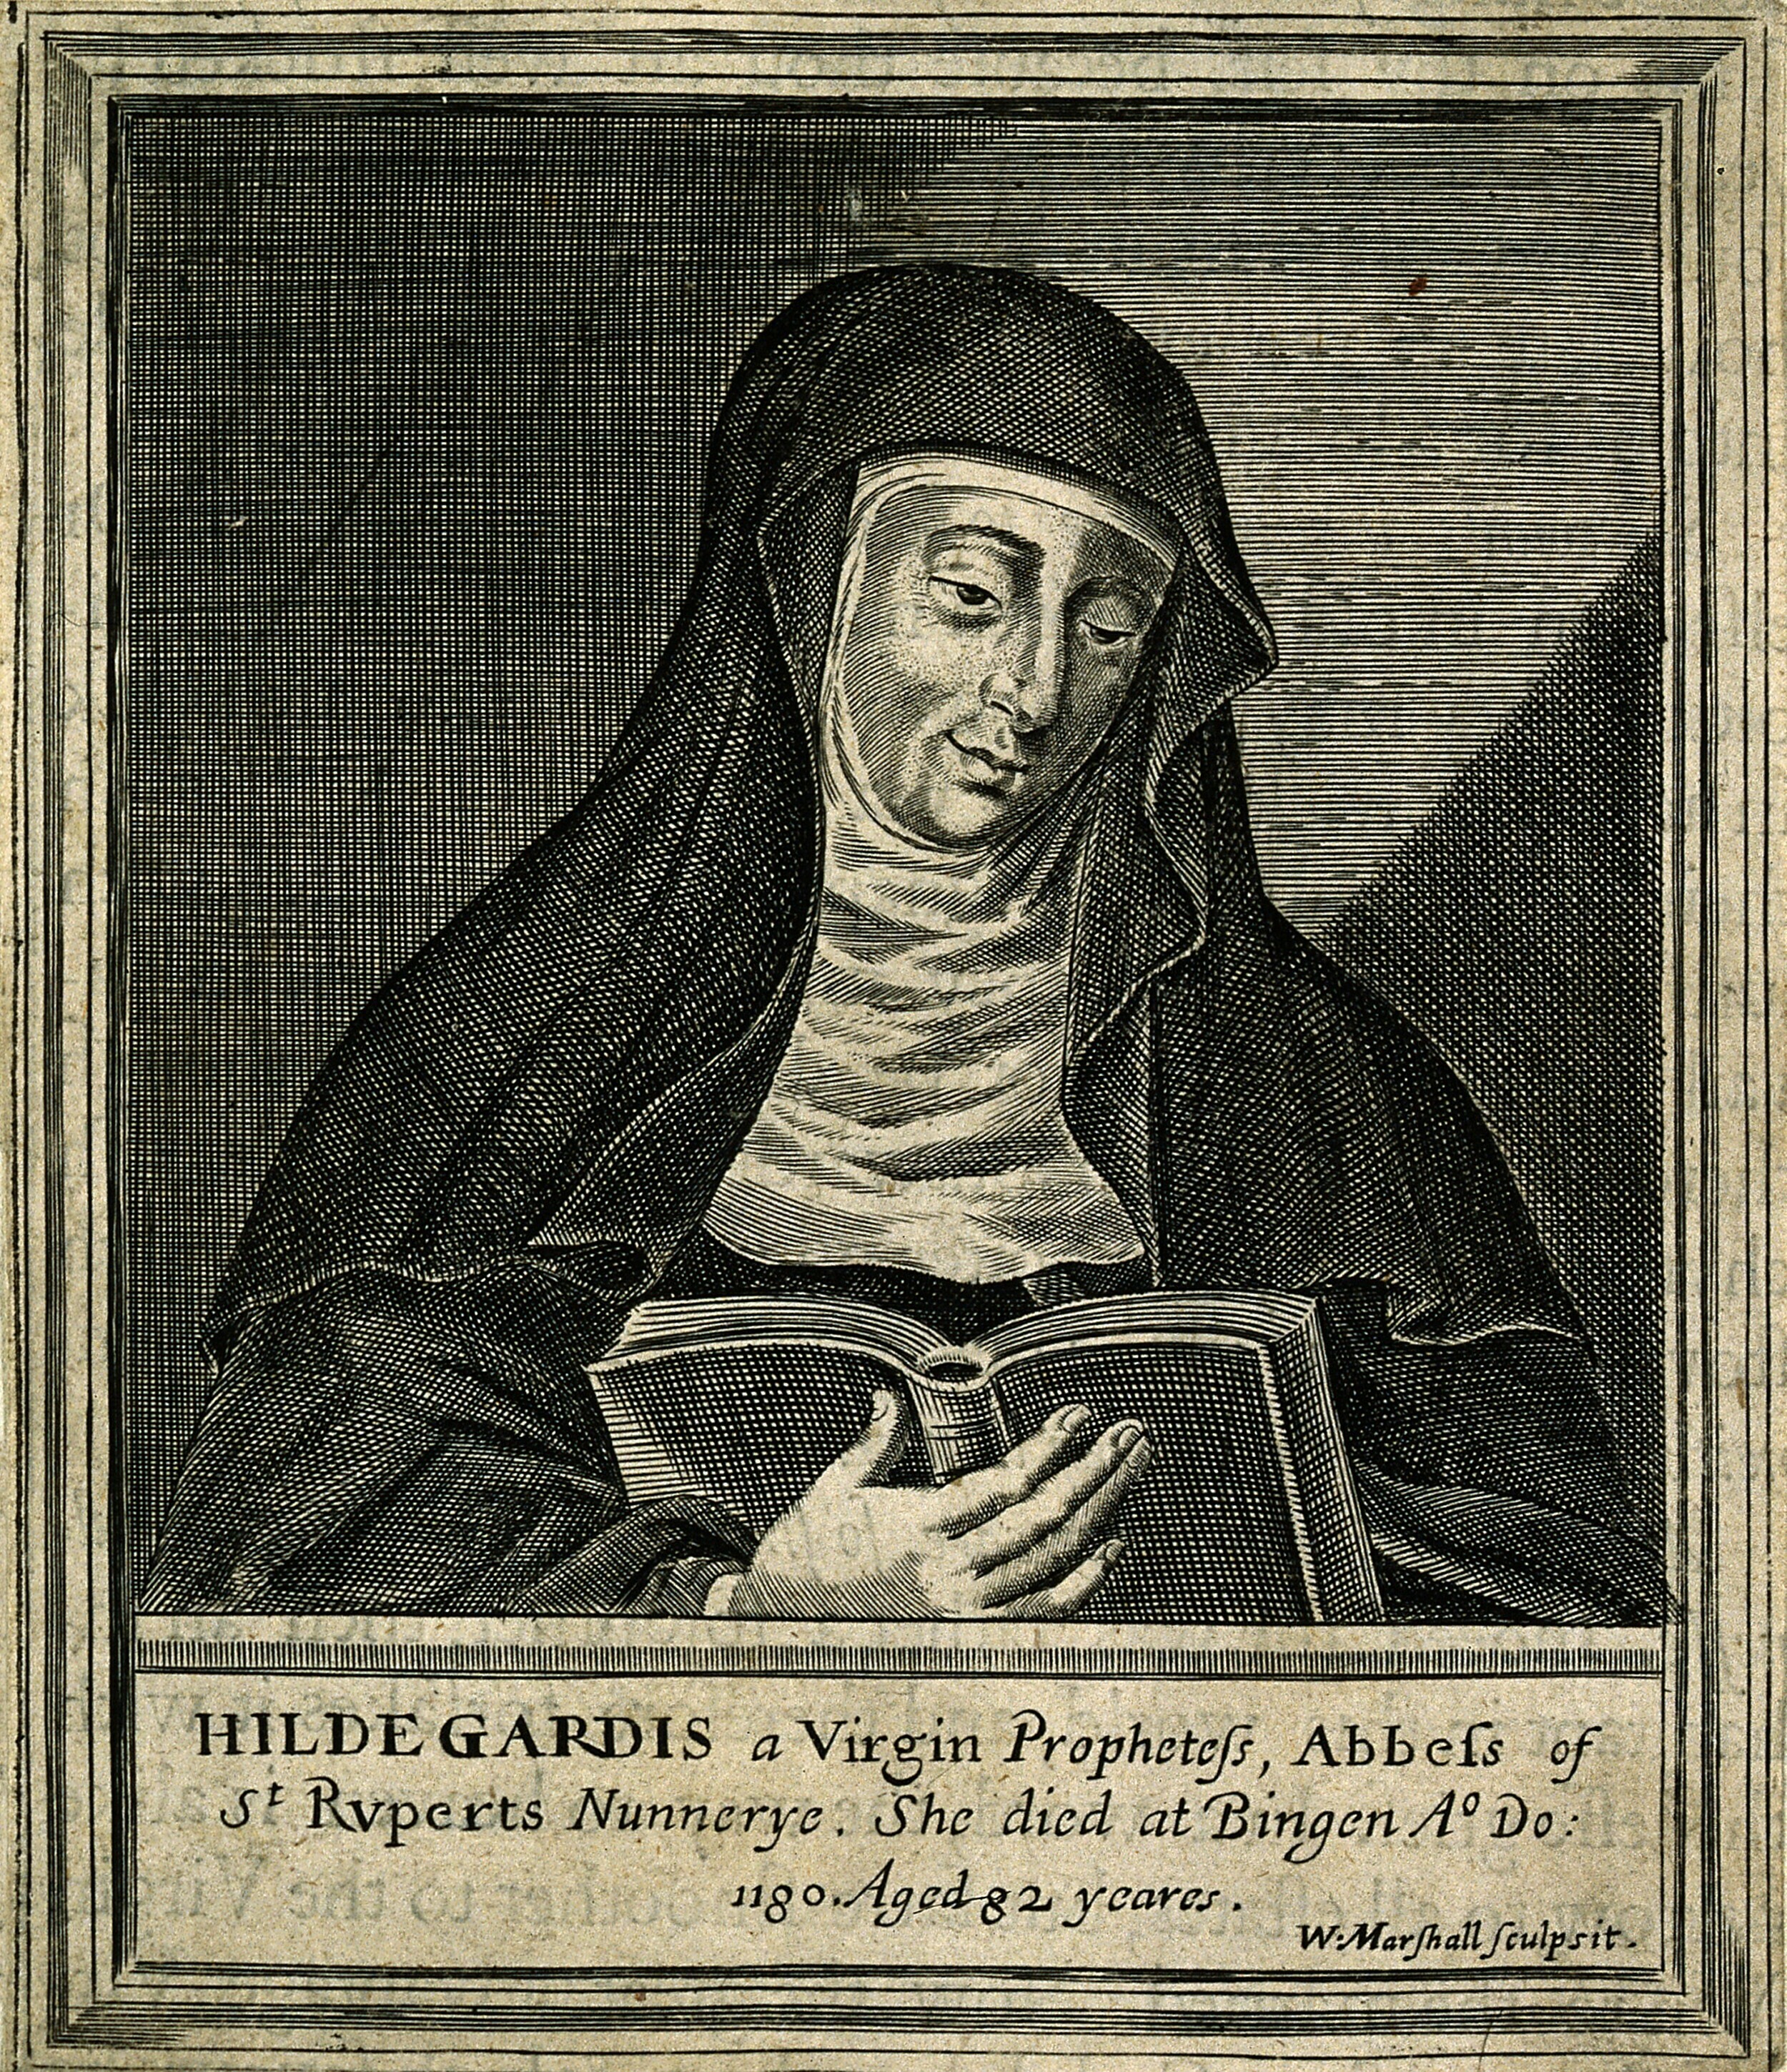 希尔德加德·冯·宾根（Hildegard von Bingen），中世纪德国神学家、作曲家及作家。天主教圣人、教会圣师。她担任艾宾根修道院修道院院长、修院领袖，同时也是个哲学家、科学家、医师、语言学家、社会活动家及博物学家（值得一提的是，她本人还涉足神秘学领域）